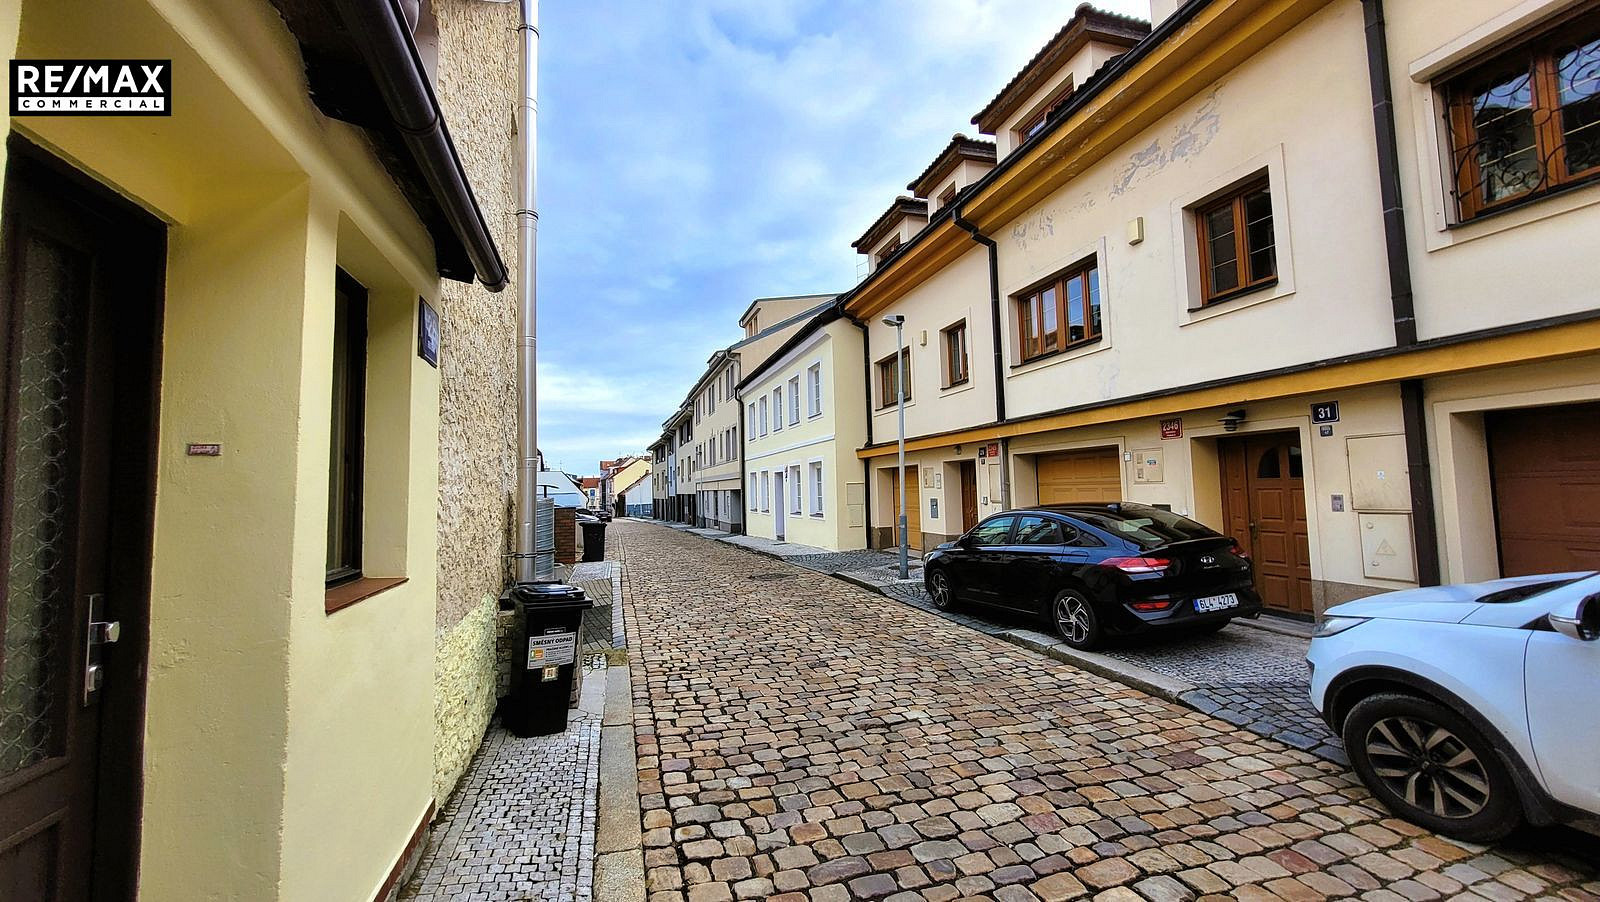 Fastrova, Praha 6 - Břevnov